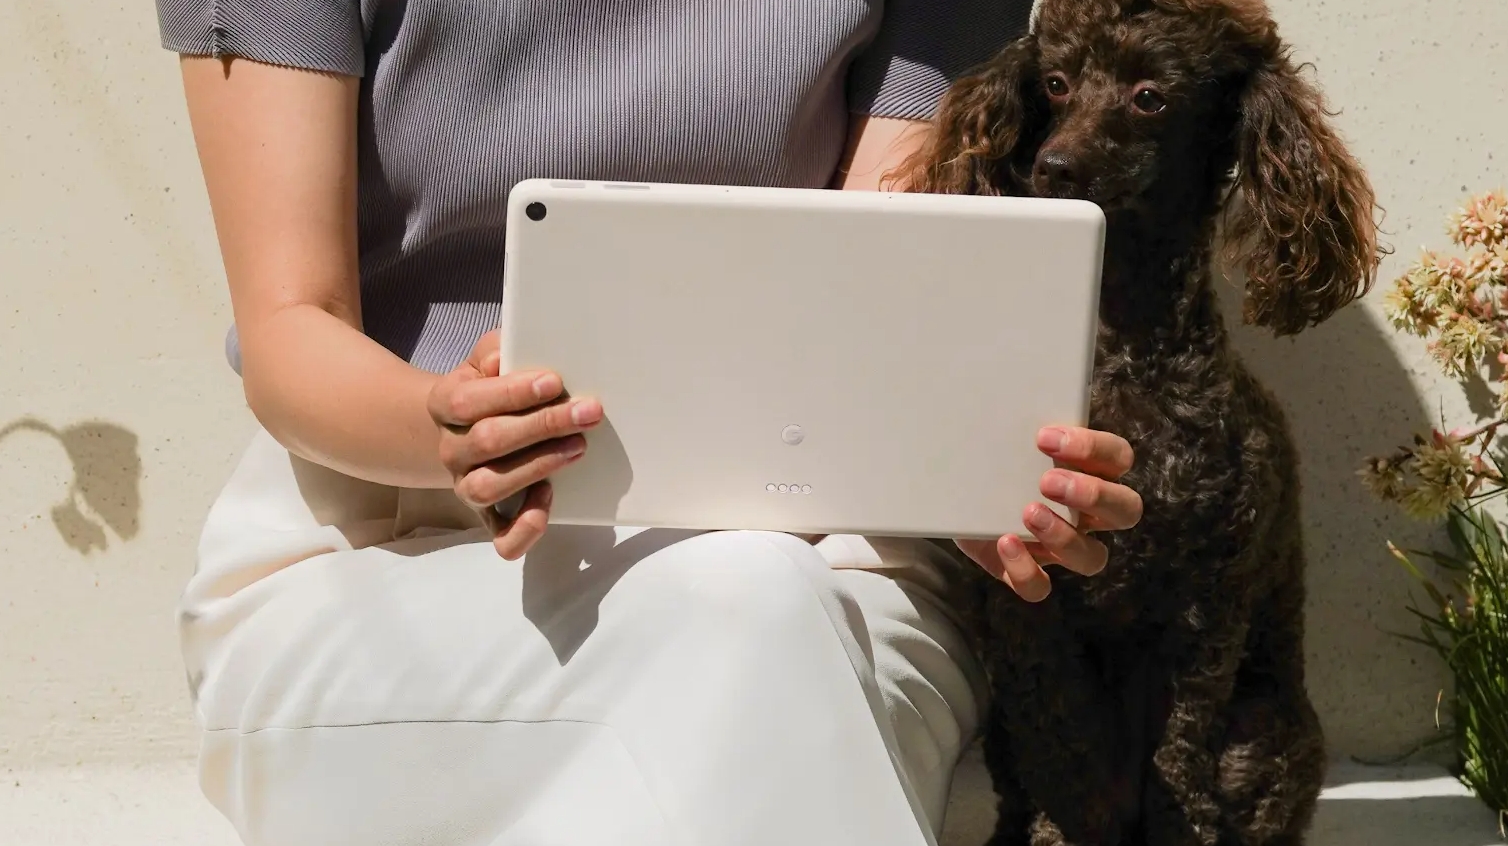 Una imagen de la Tablet Pixel desde atrás, en la mano de una persona